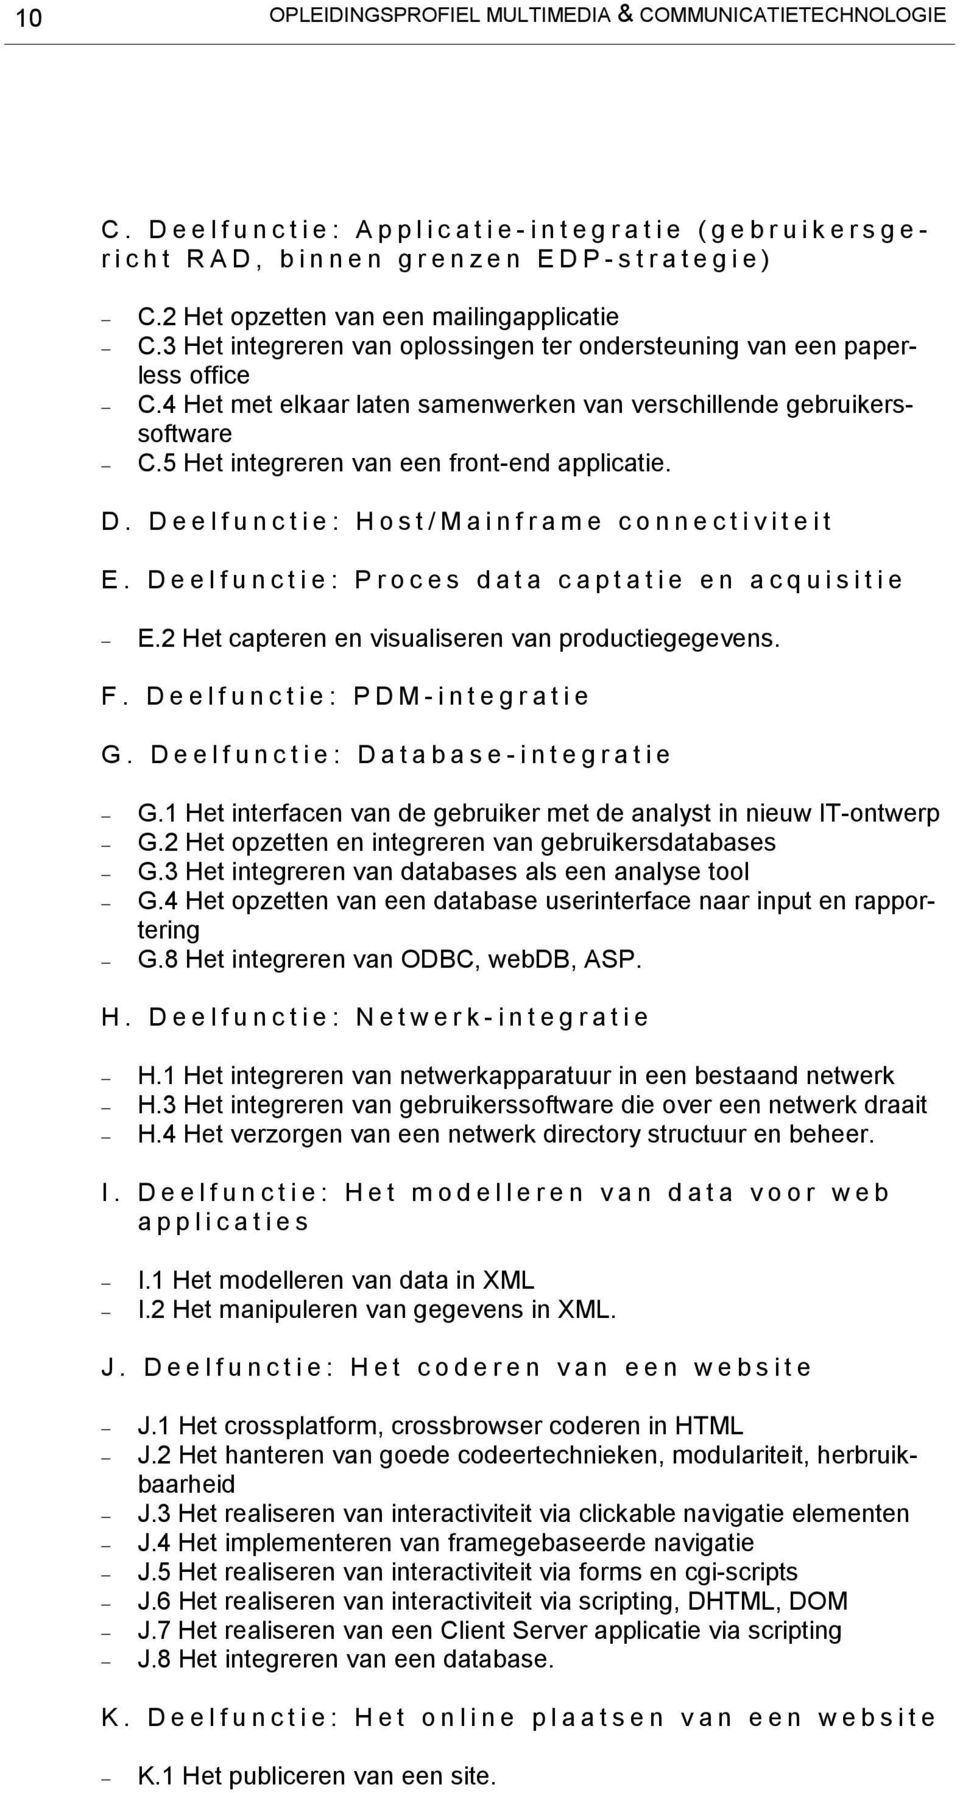 D. Deelfunctie: Host/Mainframe connectiviteit E. Deelfunctie: Proces data captatie en acquisitie E.2 Het capteren en visualiseren van productiegegevens. F. Deelfunctie: PDM-integratie G.